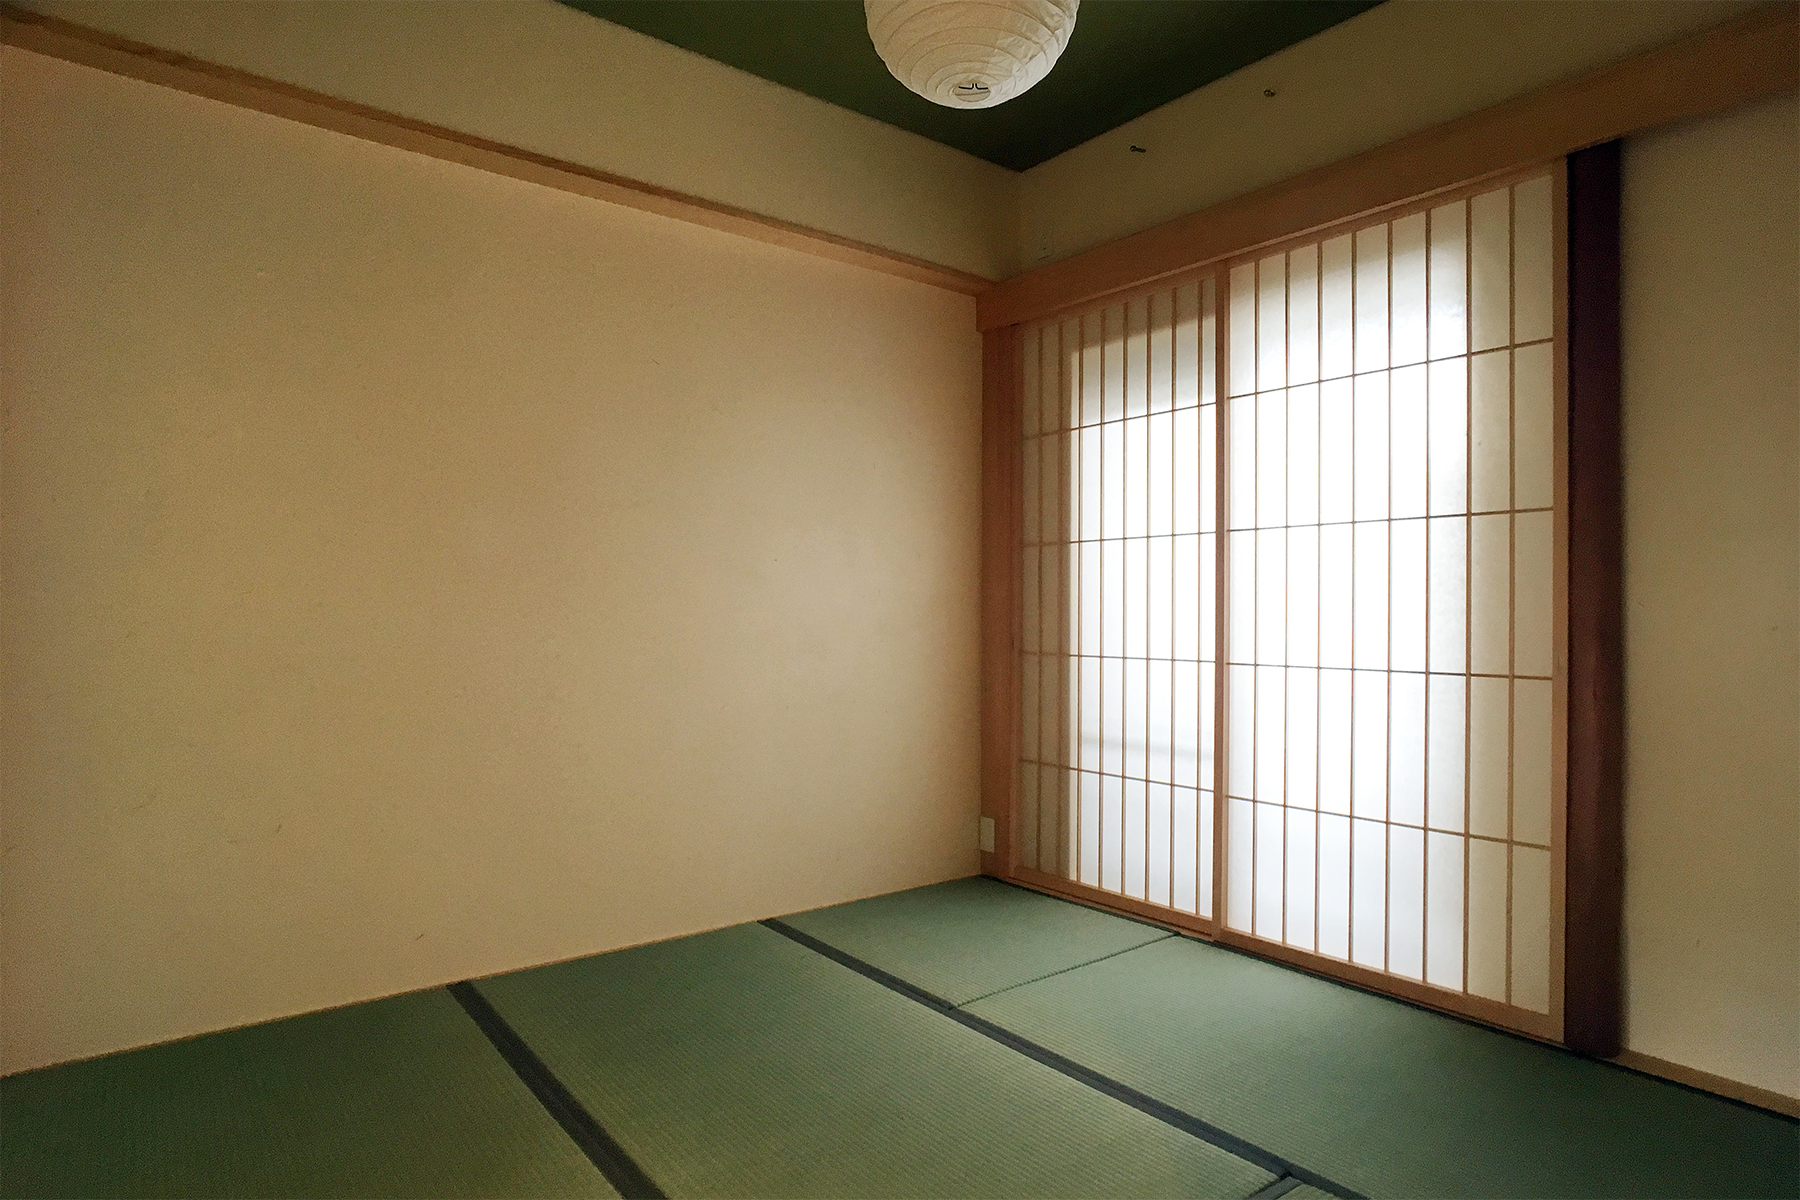 和紙貼り天井と藁スサ入りの漆喰壁の落ち着いた和室